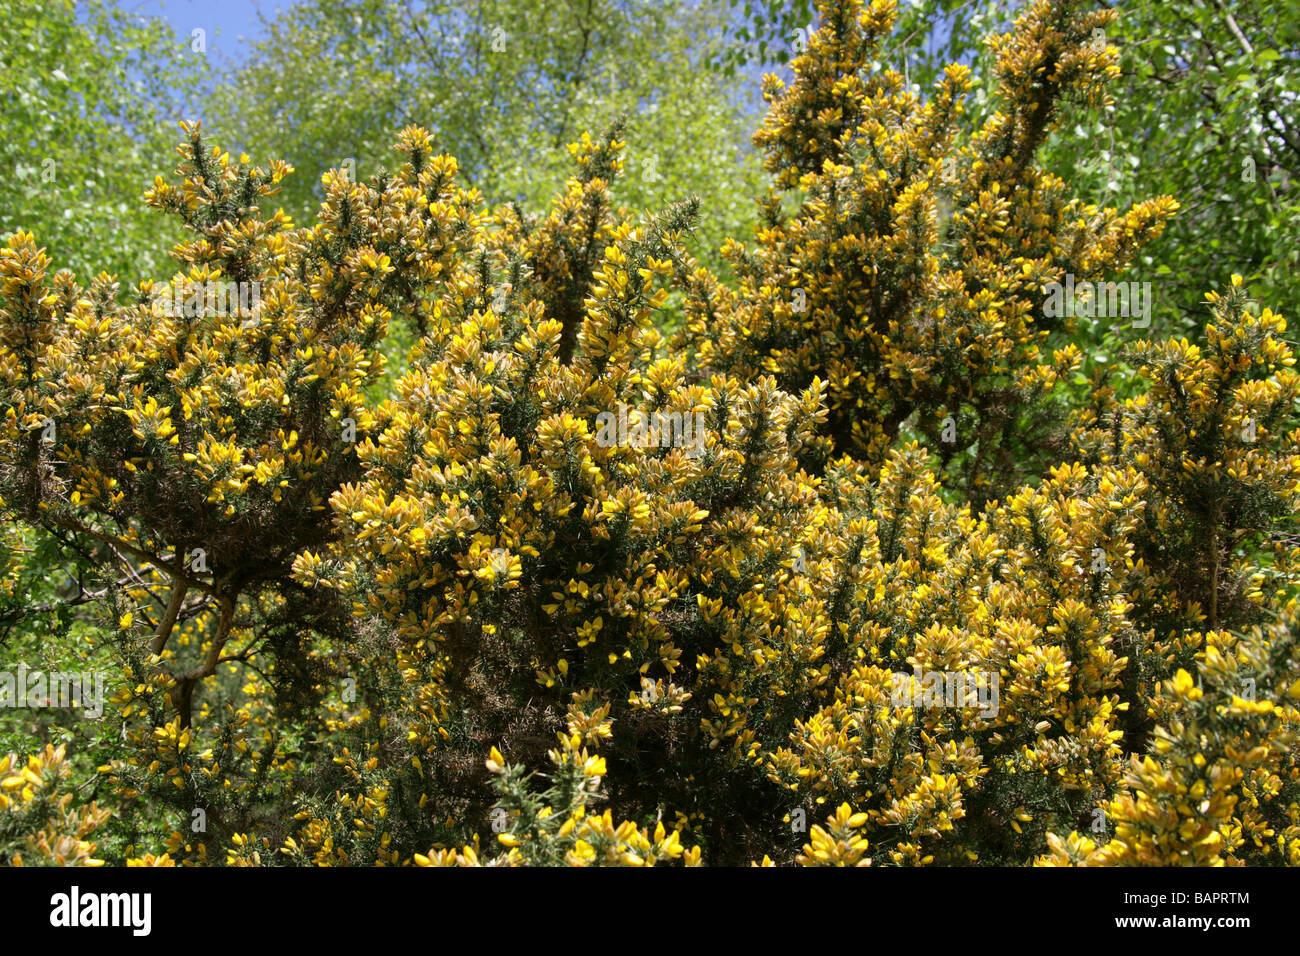 L'ajonc commun Furze ou Whin, Ulex europaeus, Fabaceae. Aka Le miel des bouteilles ou Hoth. Banque D'Images